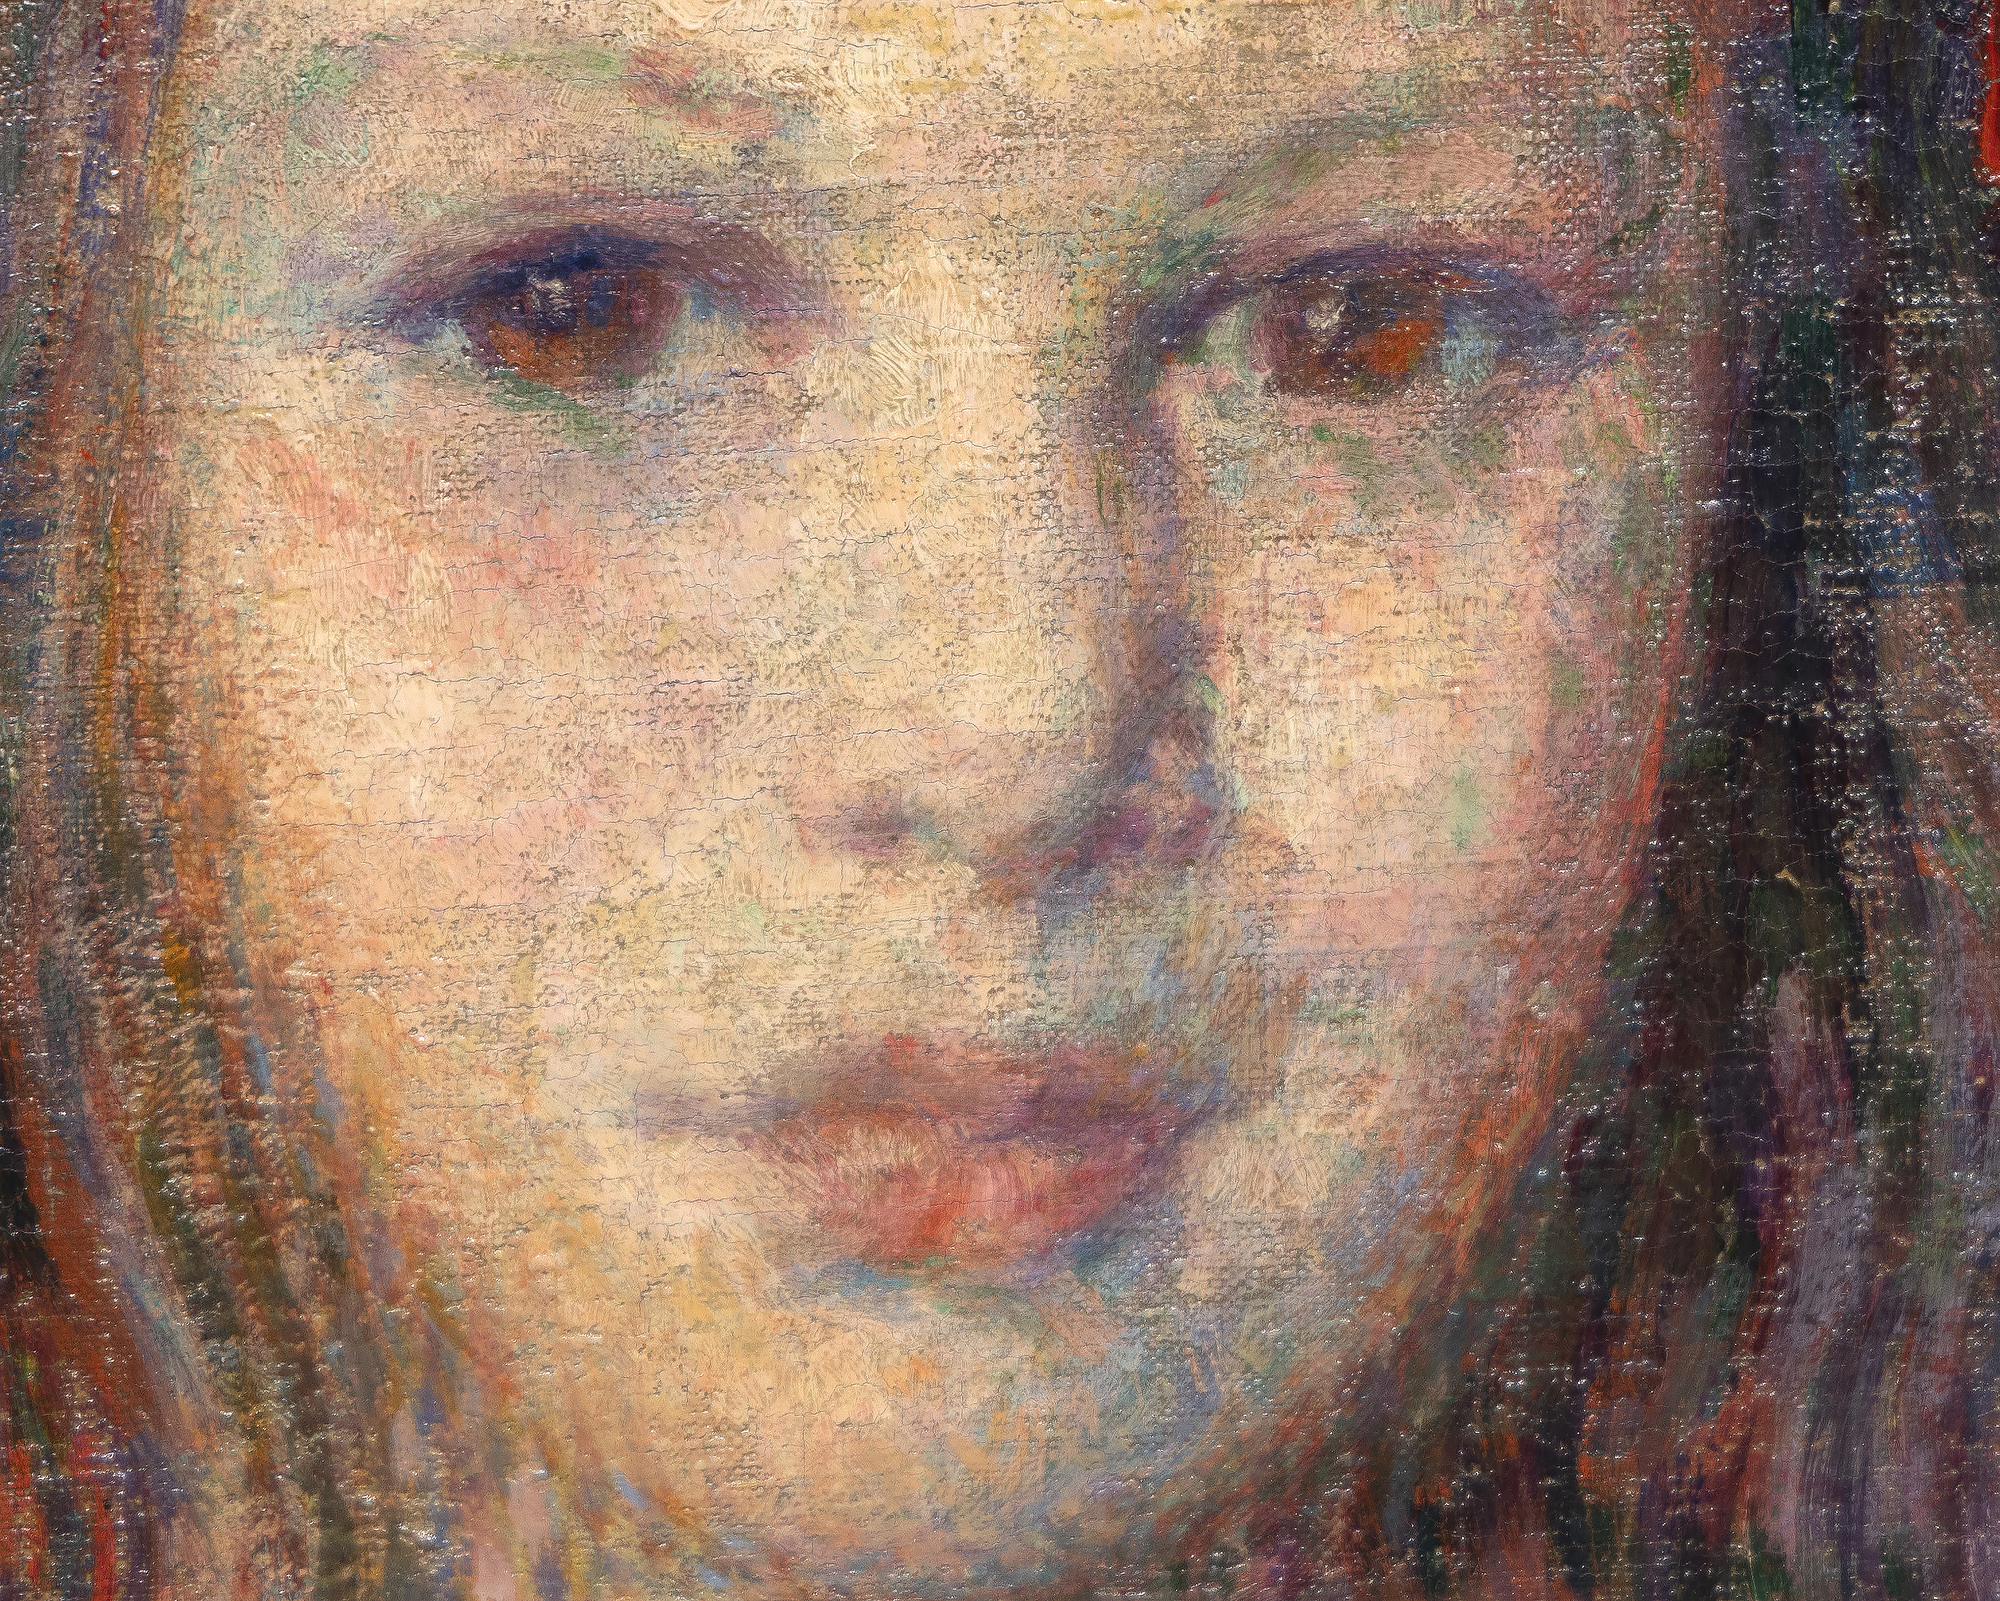 Le Portrait de Sylvie Lacombe, peint par Théo van Rysselberghe en 1906, est un chef-d'œuvre classique réalisé par l'un des portraitistes les plus raffinés et les plus cohérents de son époque. La couleur est harmonieuse, le pinceau vigoureux et adapté à sa tâche matérielle, son corps et son visage sont vrais et révélateurs. La personne représentée est la fille de son grand ami, le peintre Georges Lacombe, qui a partagé une association étroite avec Gauguin et a été membre des Nabis avec les artistes Bonnard, Denis et Vuillard, entre autres. Si nous connaissons aujourd'hui Sylvie Lacombe, c'est grâce à l'habileté de Van Rysselberghe à rendre les subtiles expressions du visage et, par une observation minutieuse et un souci du détail, à donner un aperçu de son monde intérieur. Il a choisi un regard direct, ses yeux vers les vôtres, une alliance inéluctable entre le sujet et le spectateur, quelle que soit notre relation physique avec le tableau. Van Rysselberghe avait largement abandonné la technique pointilliste lorsqu'il a peint ce portrait. Mais il a continué à appliquer les principes de la théorie des couleurs en utilisant des teintes de rouge - roses et mauves - contre des verts pour créer une palette harmonieuse et améliorée de couleurs complémentaires à laquelle il a ajouté un accent fort pour attirer le regard - un nœud rouge intensément saturé posé de manière asymétrique sur le côté de sa tête.